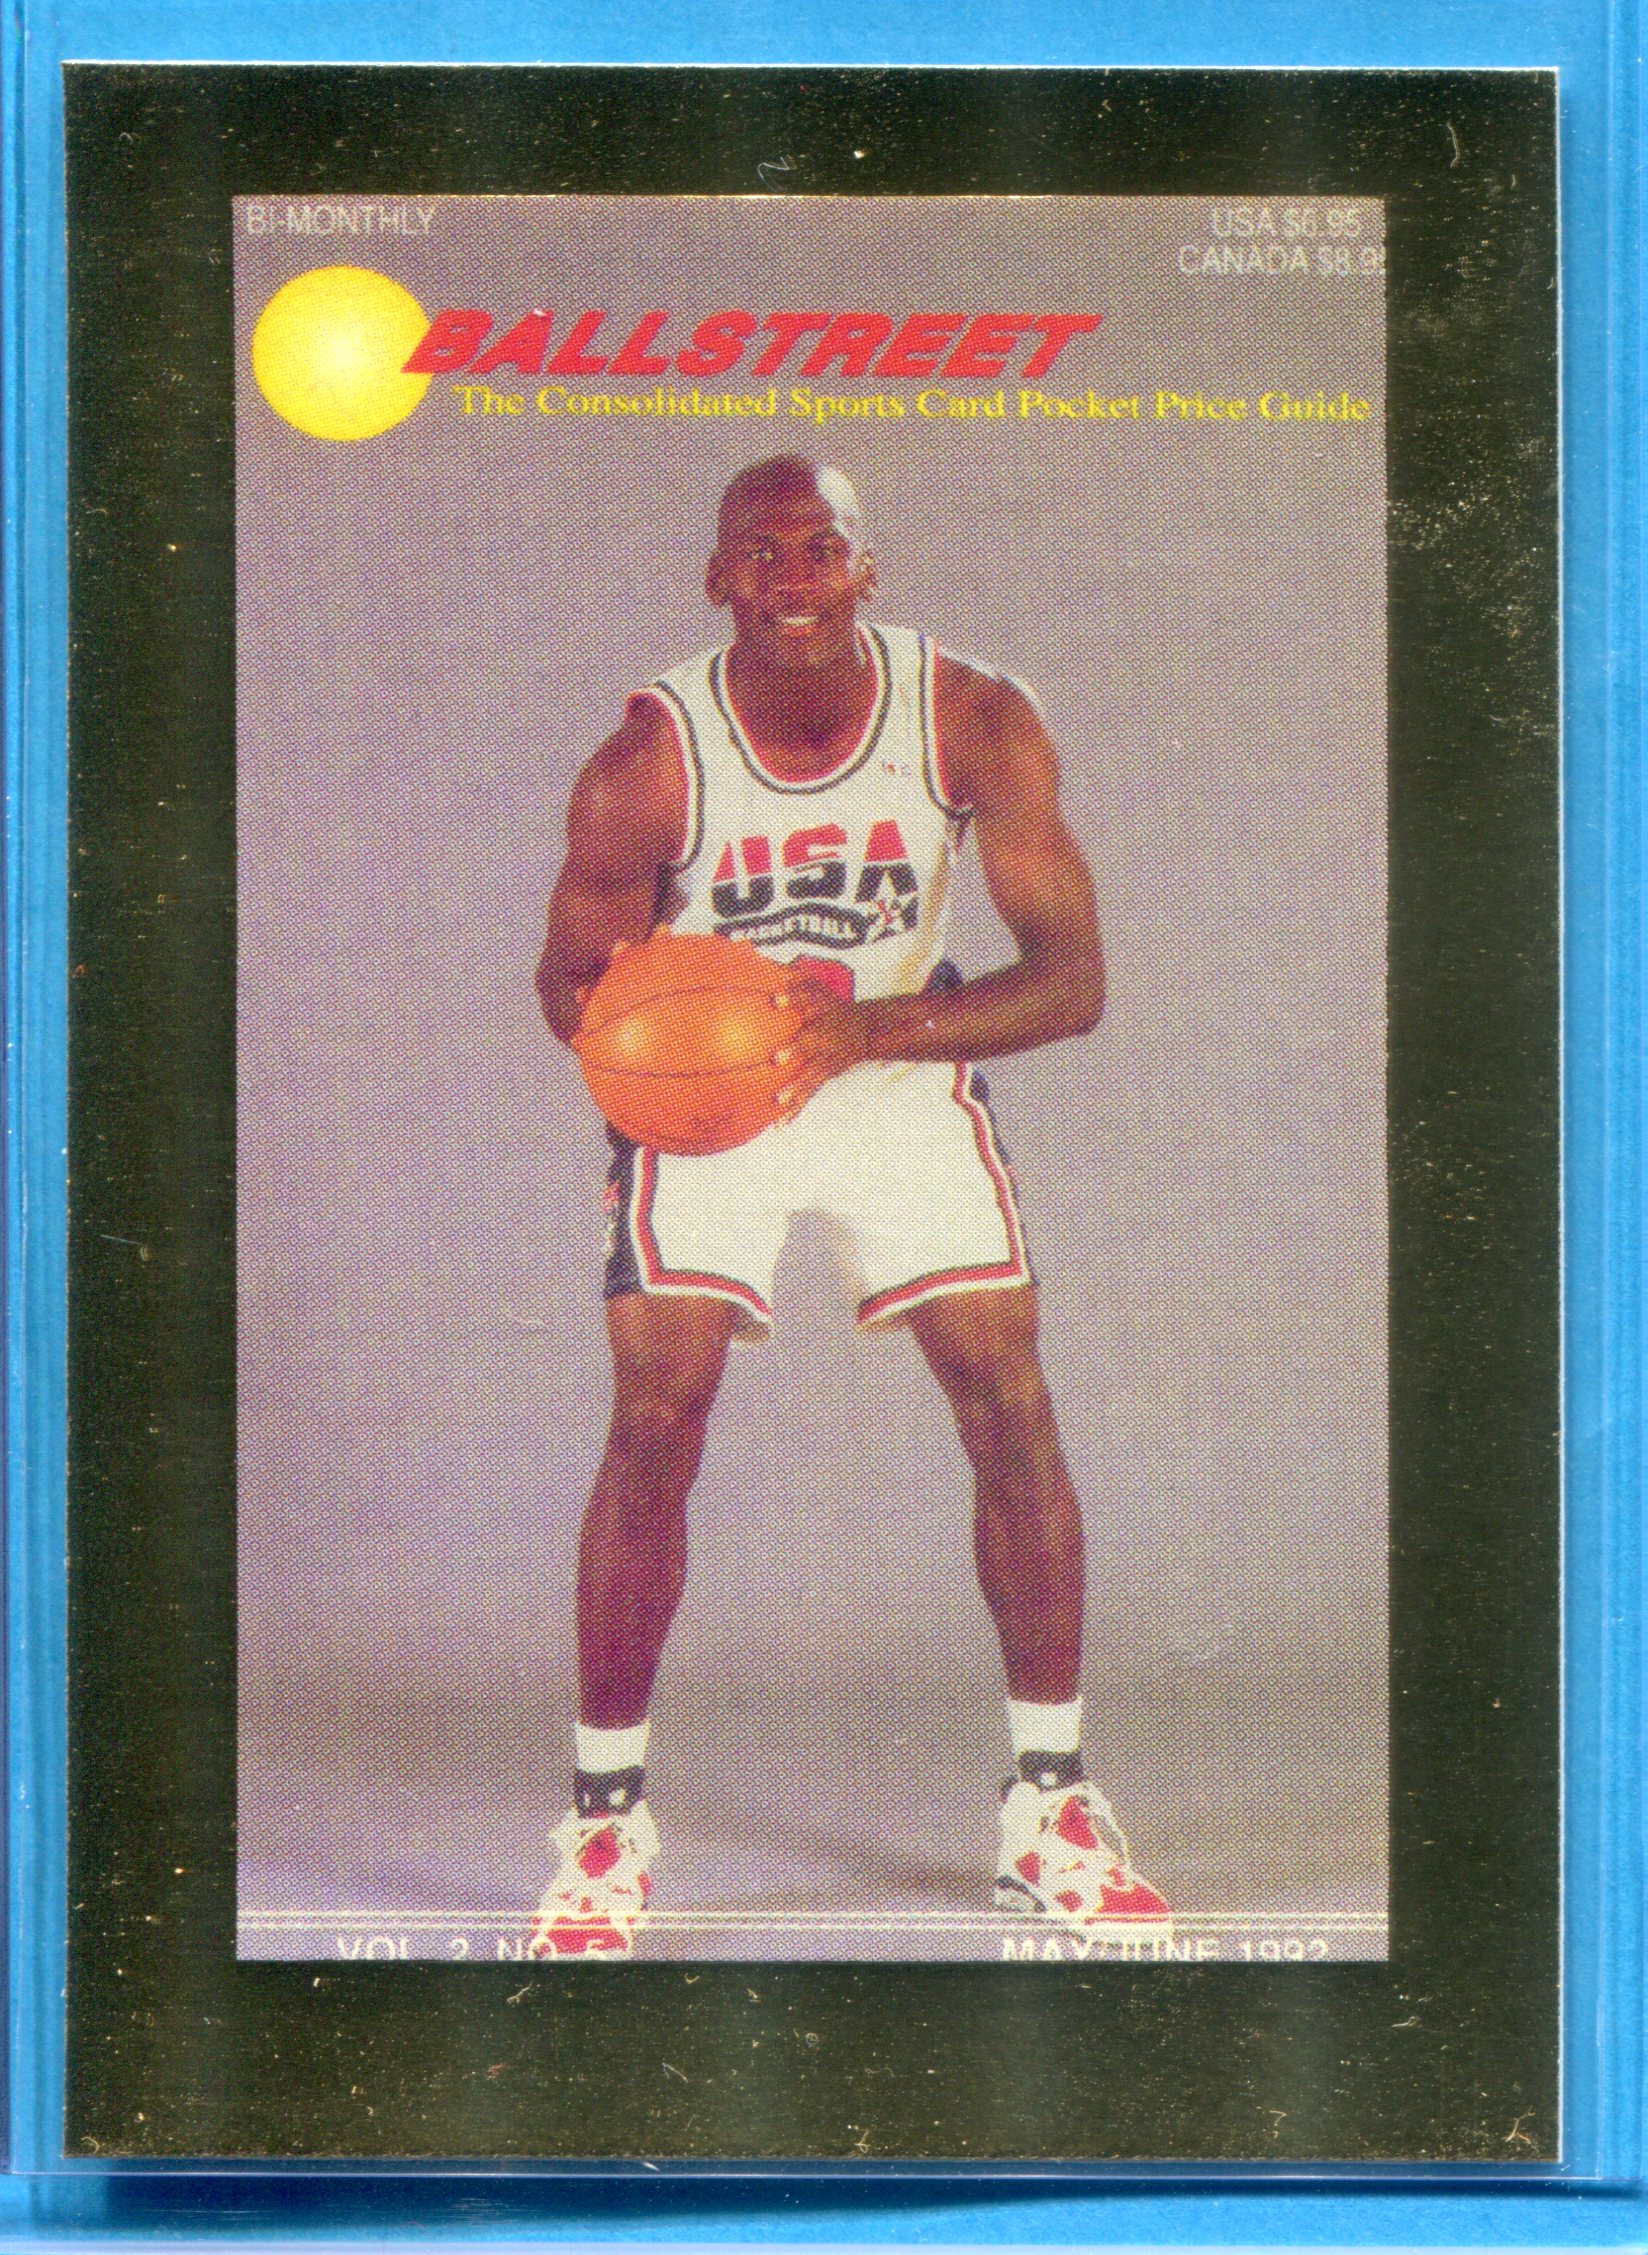 1992 Ballstreet News Gold Promotional Card (No #) Michael Jordan